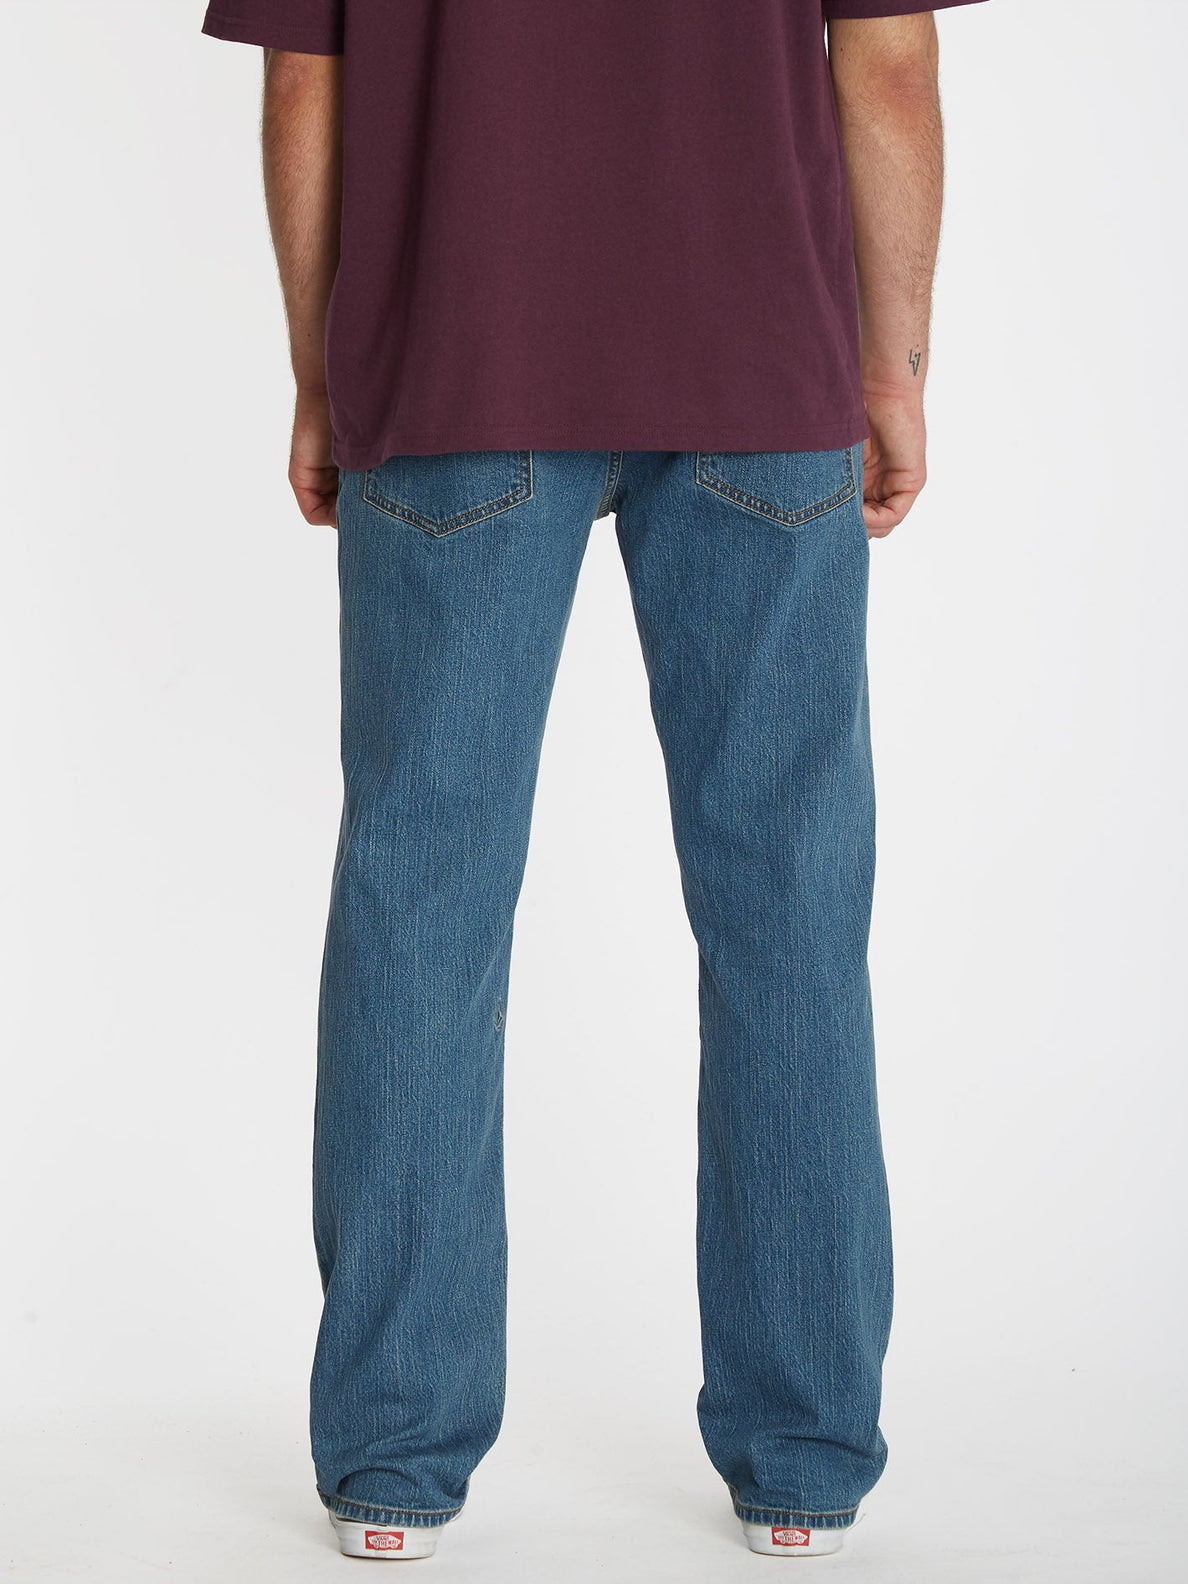 Solver Jeans - AGED INDIGO (A1932204_AIN) [B]